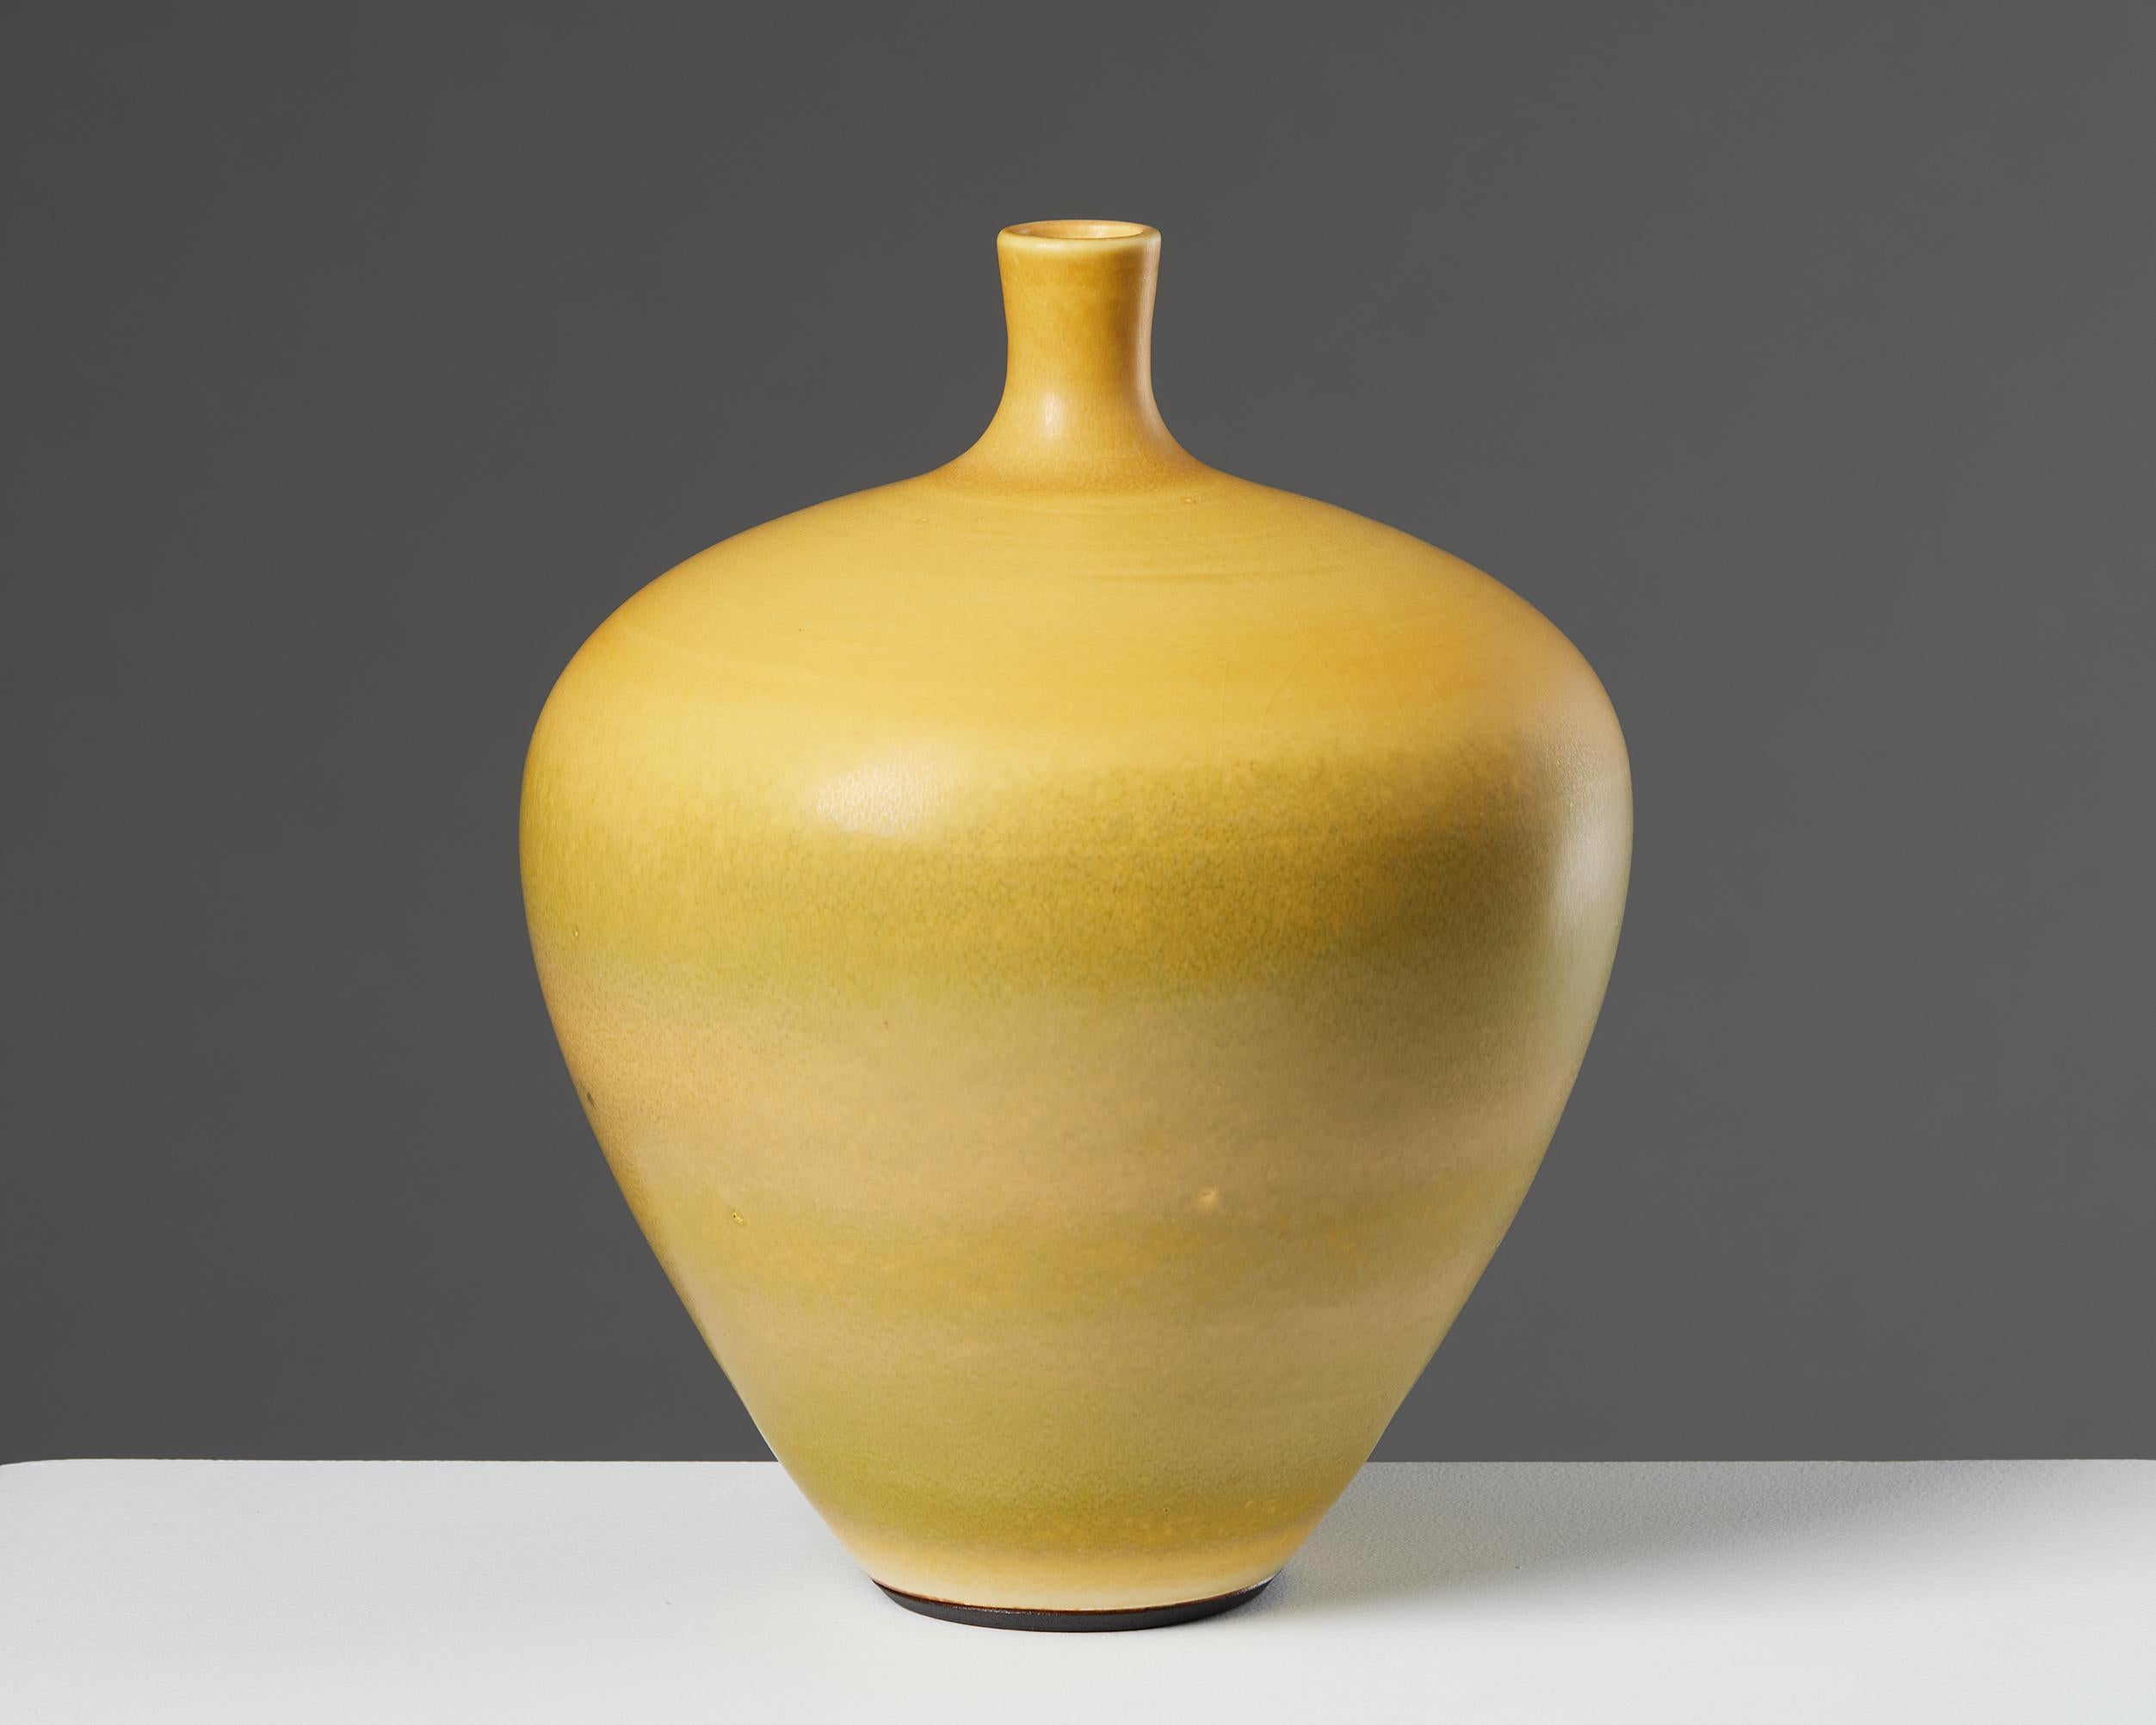 Vase entworfen von Berndt Friberg für Gustavsberg,
Schweden. 1963.
Steingut.

Unterschrieben.

Maße: Höhe: 22,5 cm / 9